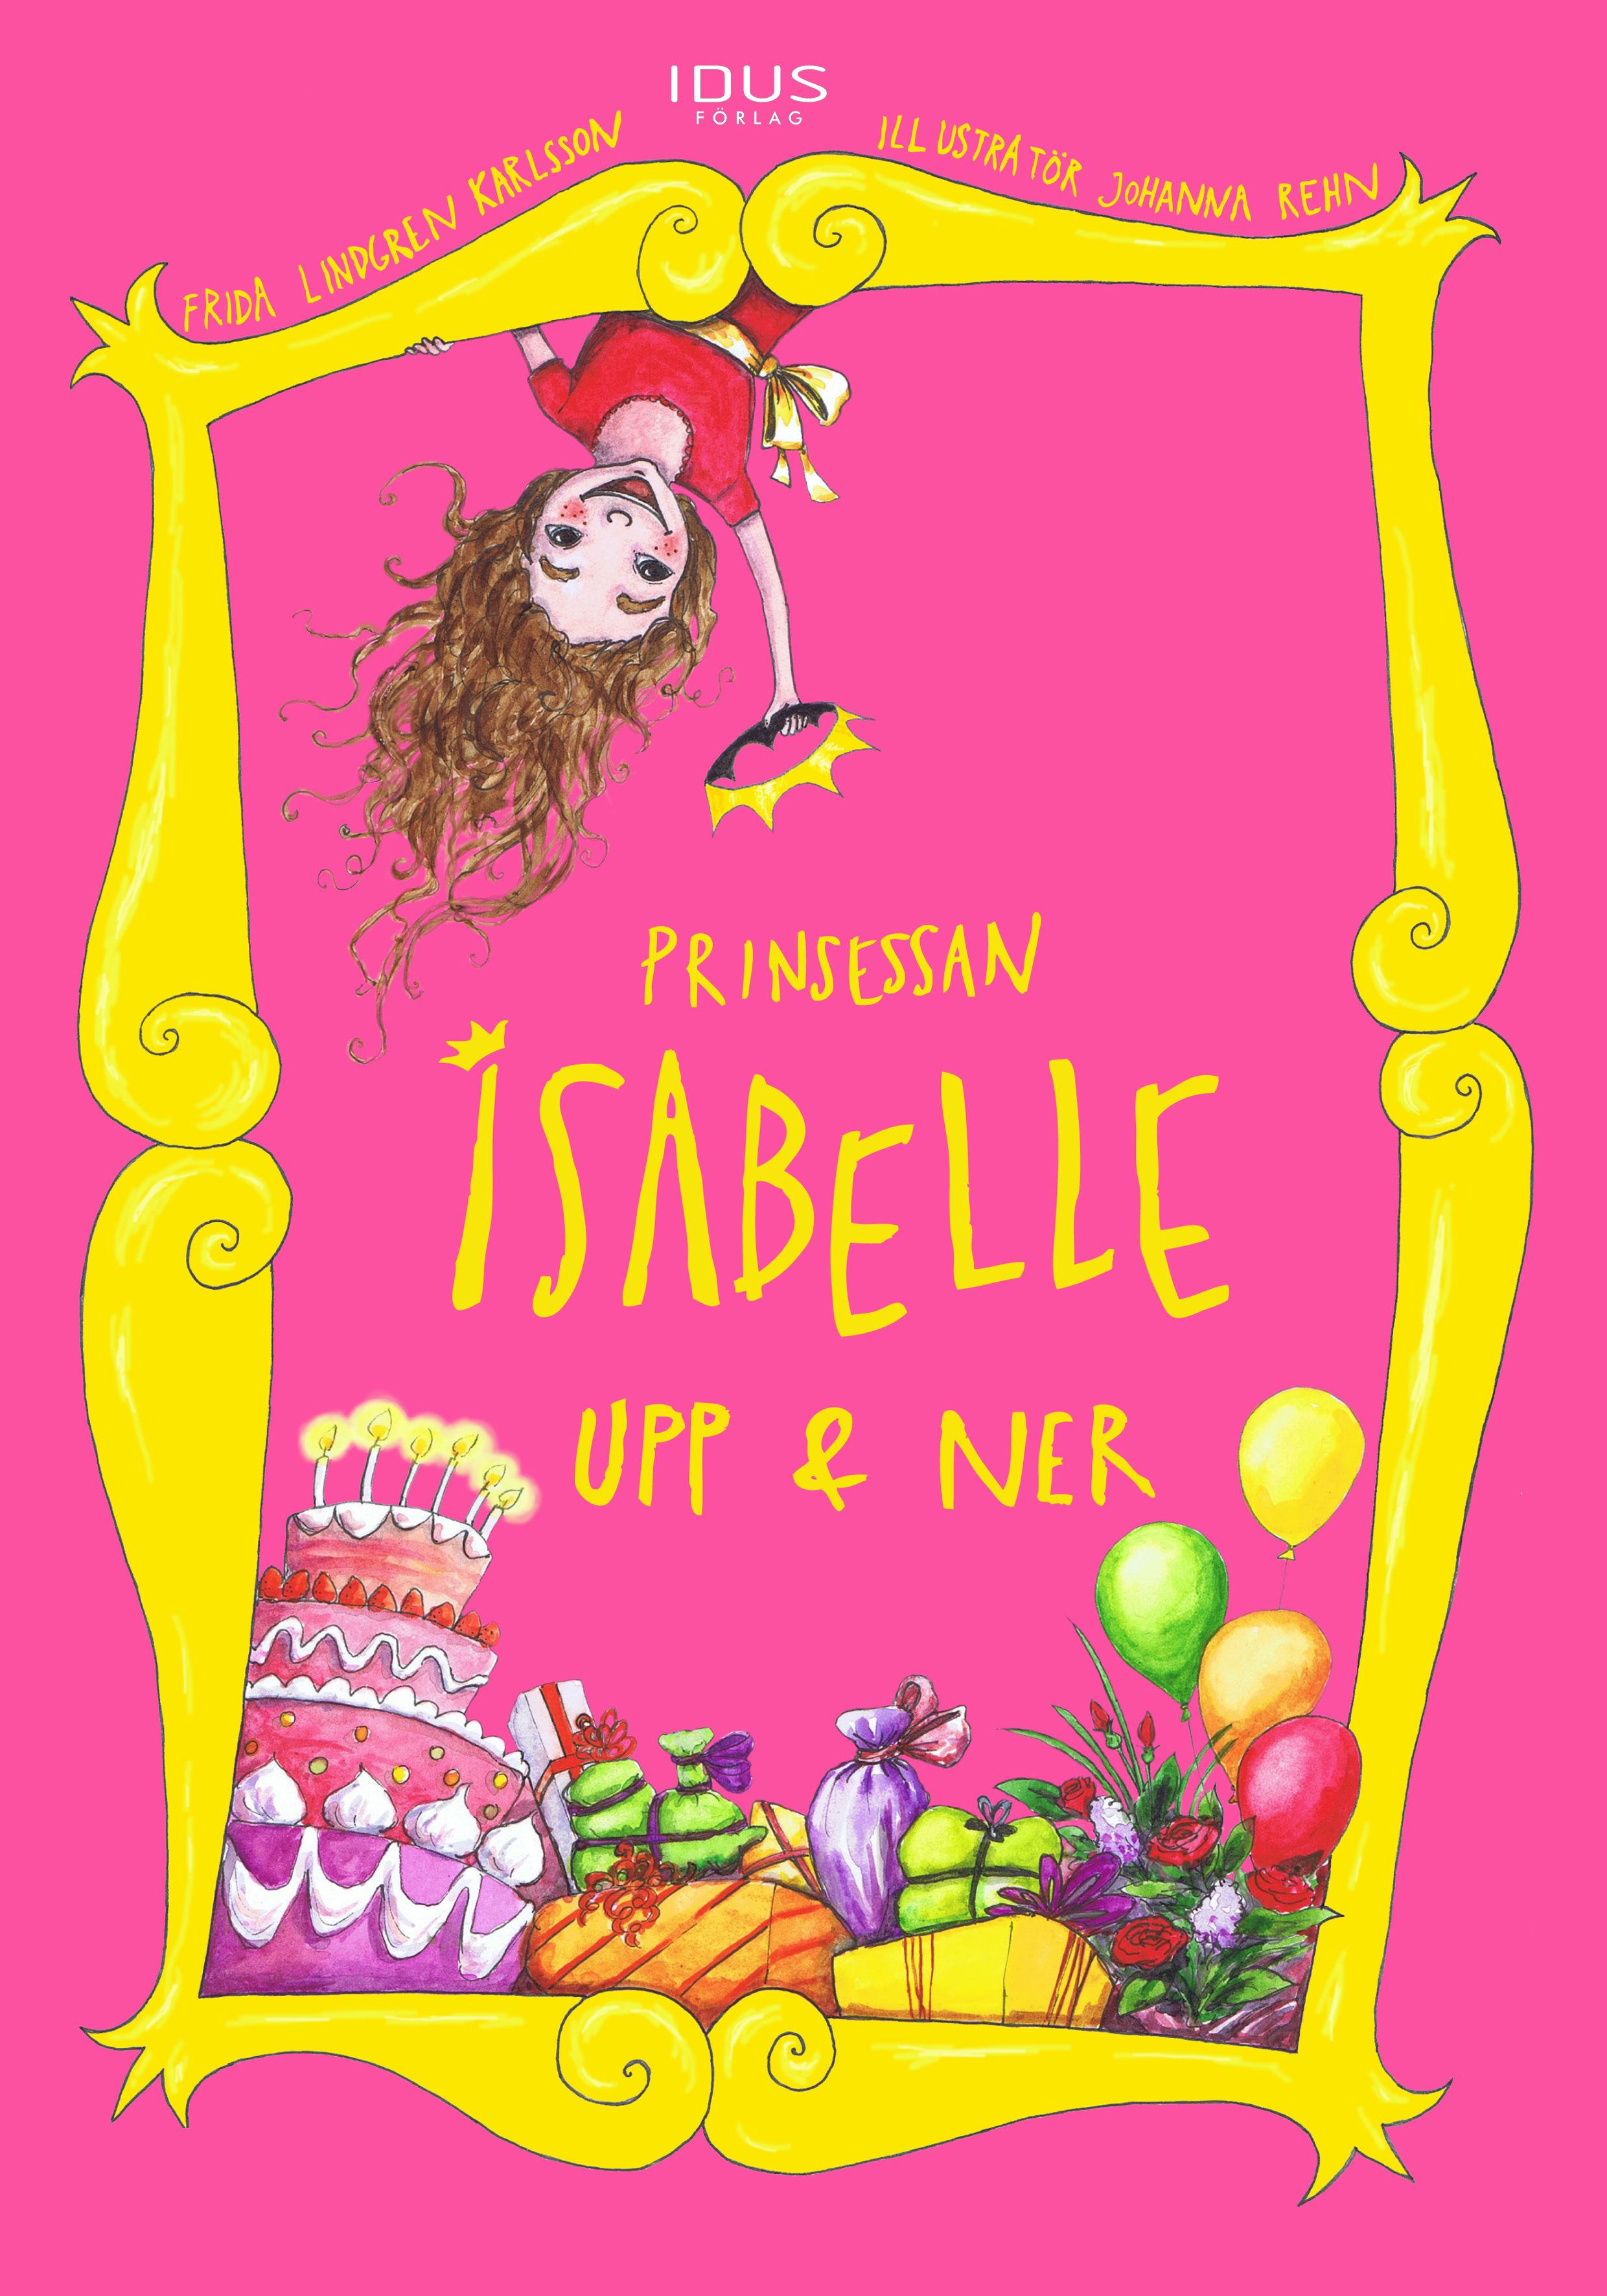 Prinsessan Isabelle Upp & Ner, e-bok av Frida Lindgren Karlsson